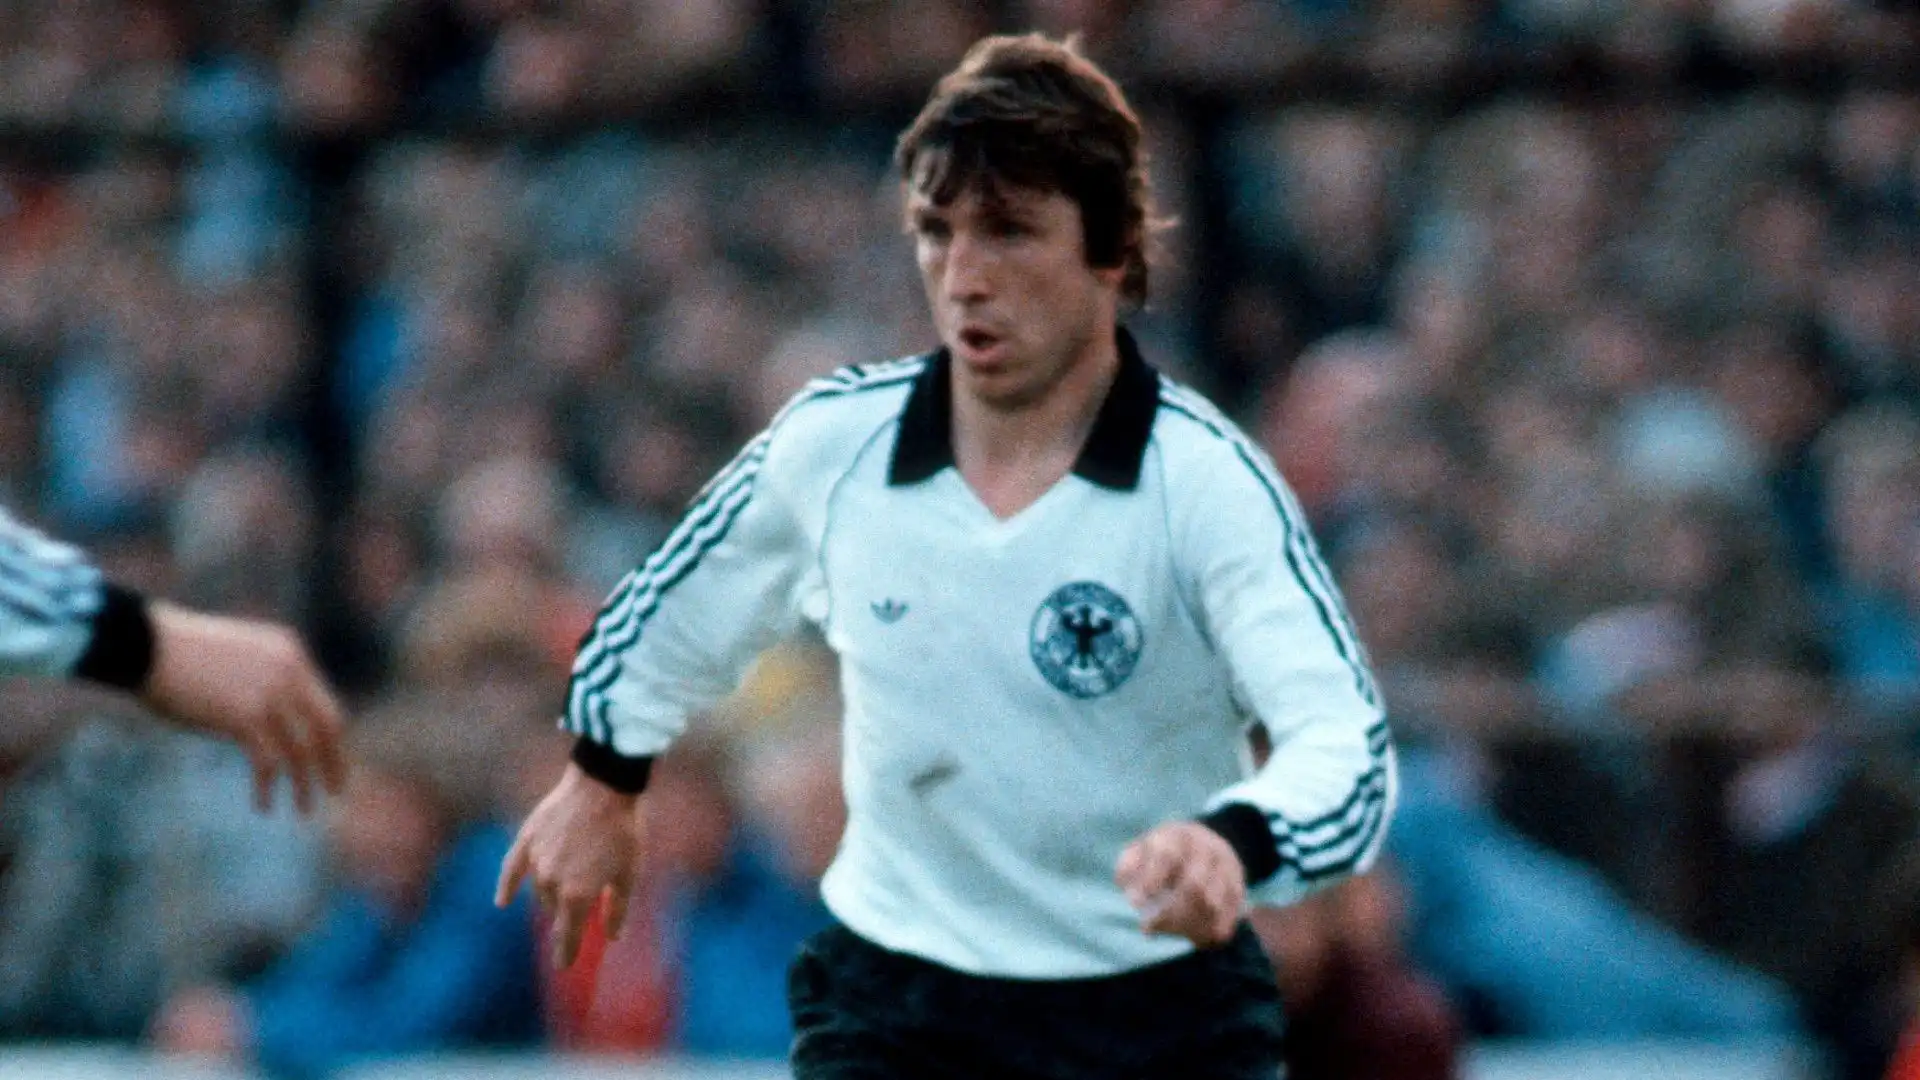 Klaus Fischer: i suoi maggiori successi sono legati allo Schalke 04, club nel quale ha giocato dal 1970 al 1981 segnando tantissimi gol